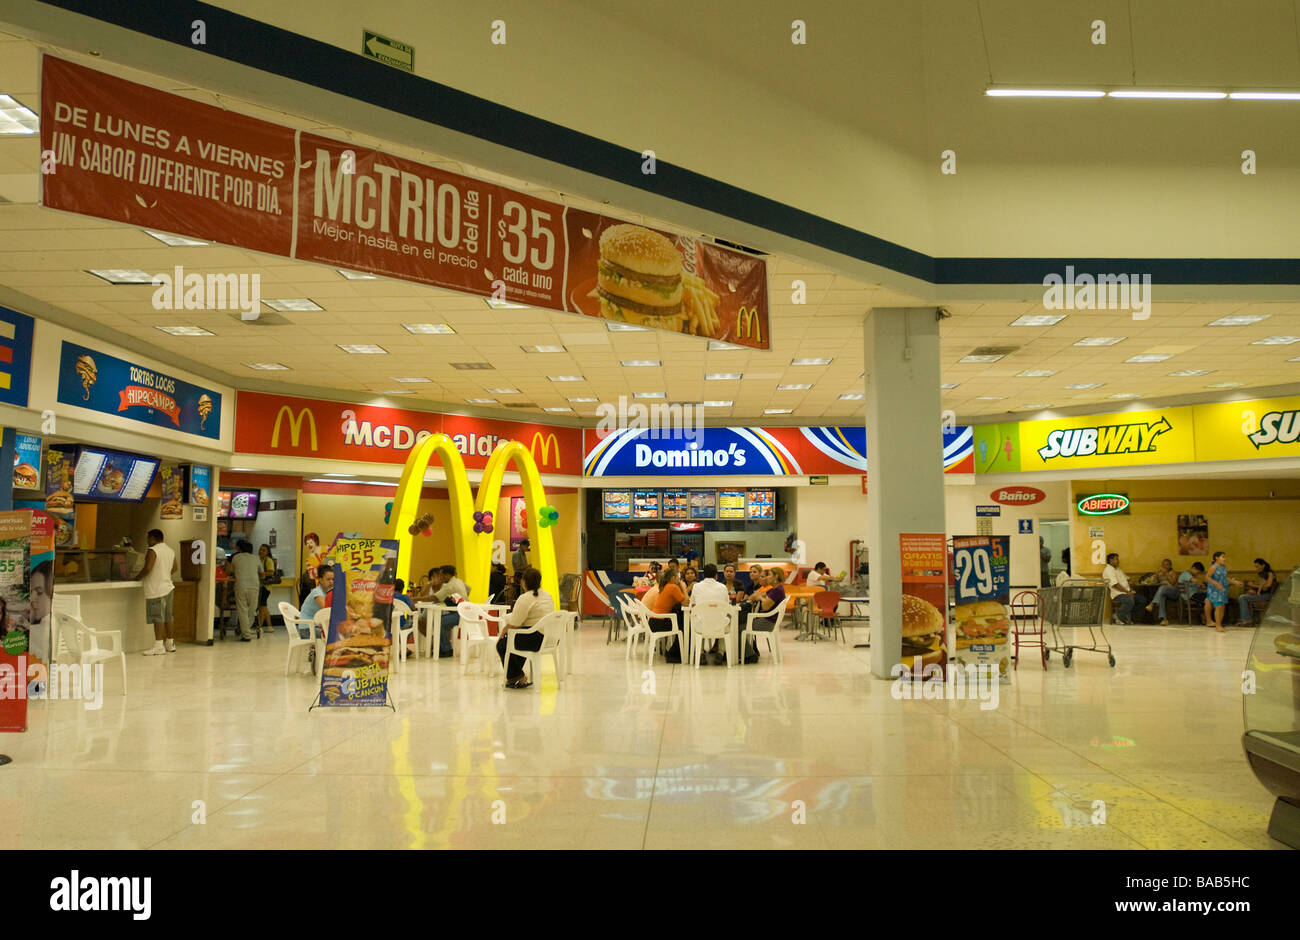 Walmart-Kaufhaus-Food-Court in Acapulco Mexiko.  Spanische Sprache Zeichen Stockfoto